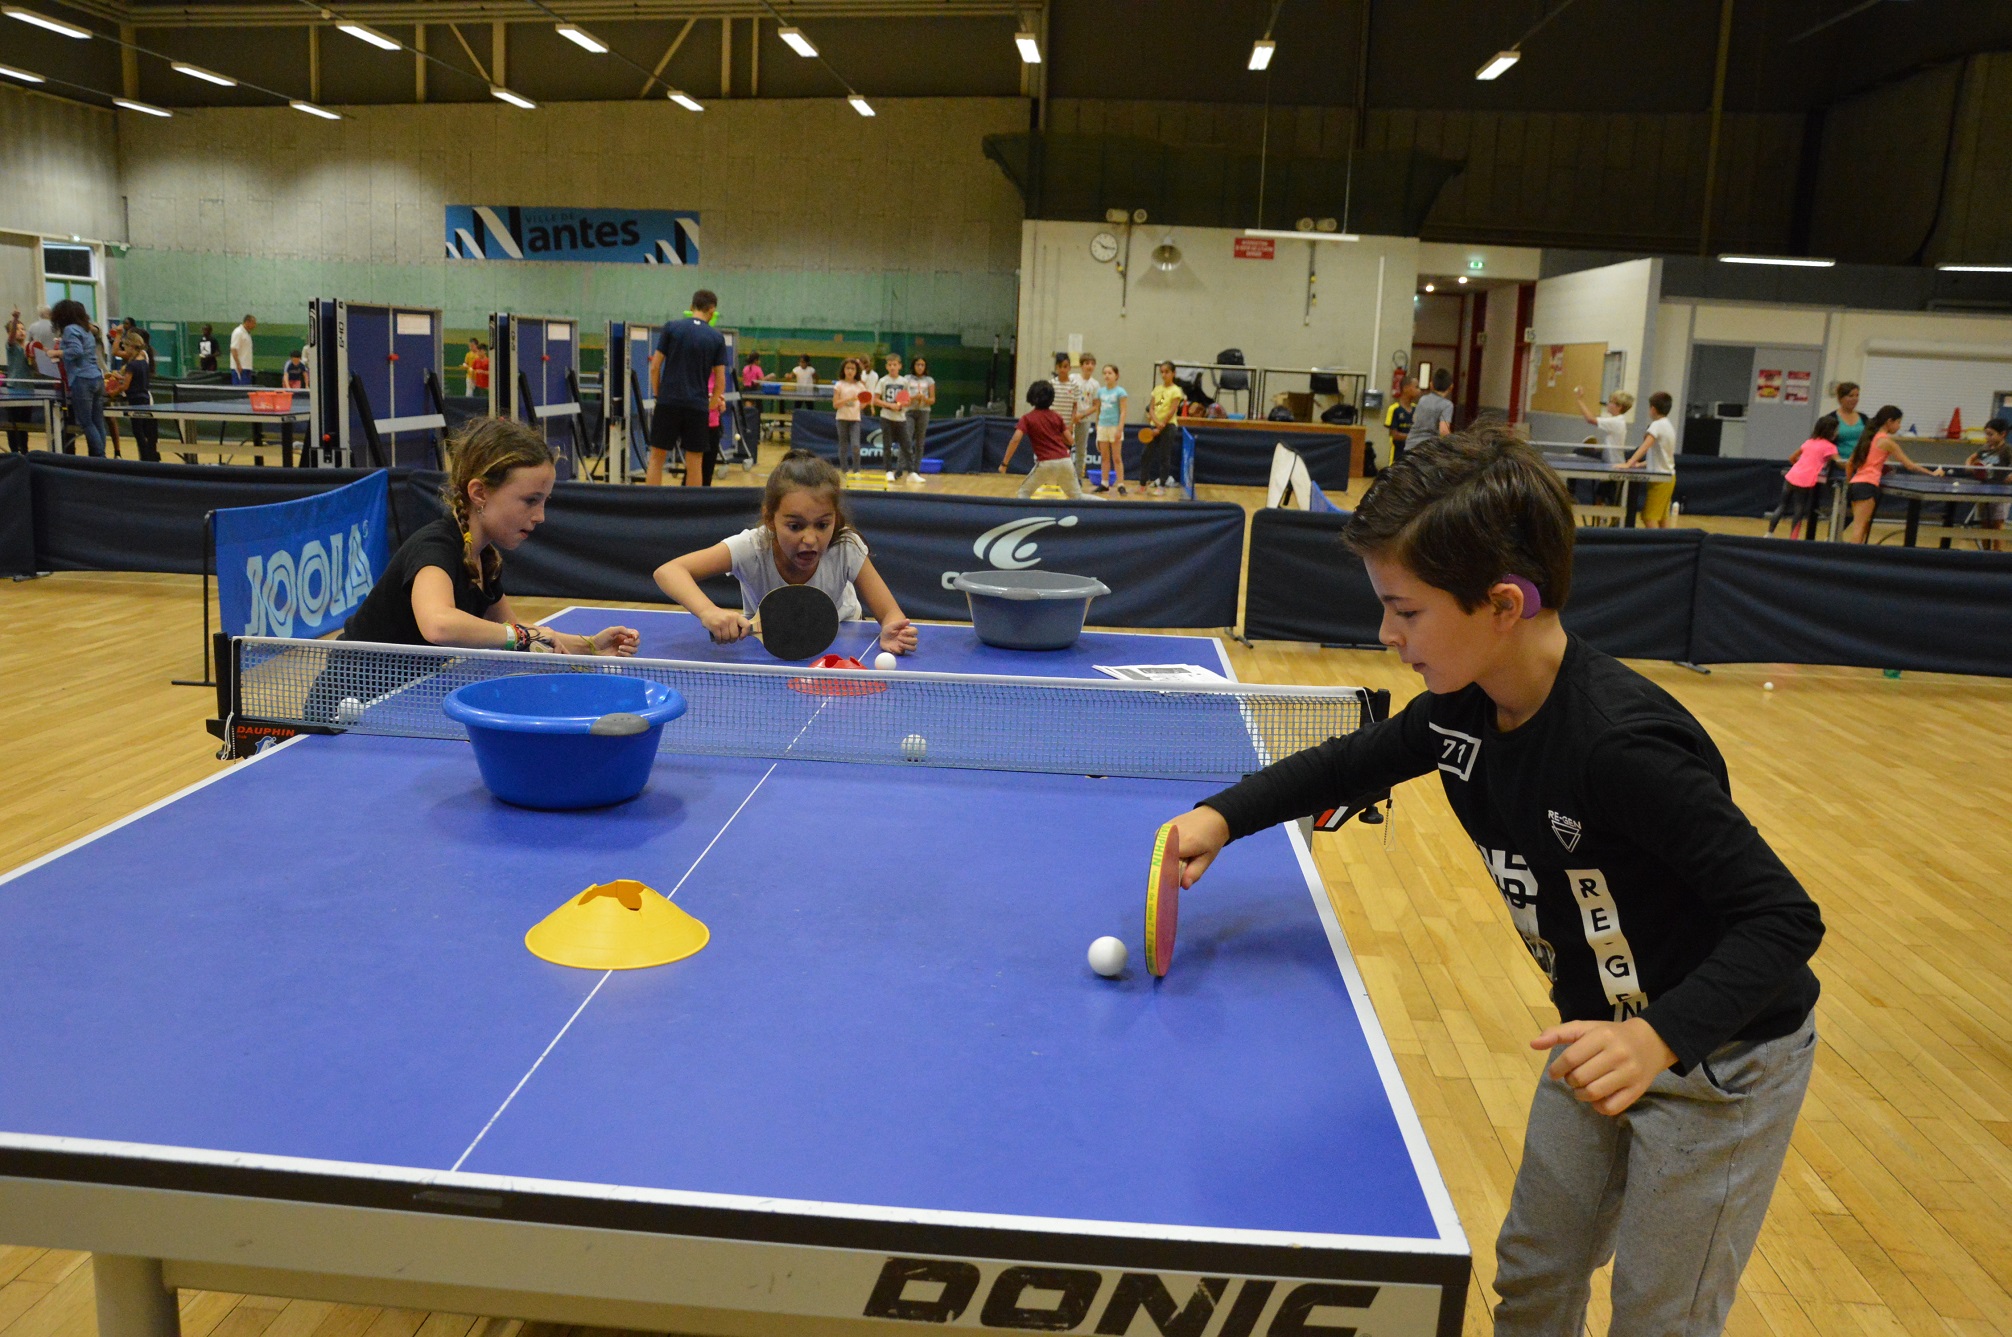 Ils veulent une table de ping-pong dans leur cour d'école - USEP